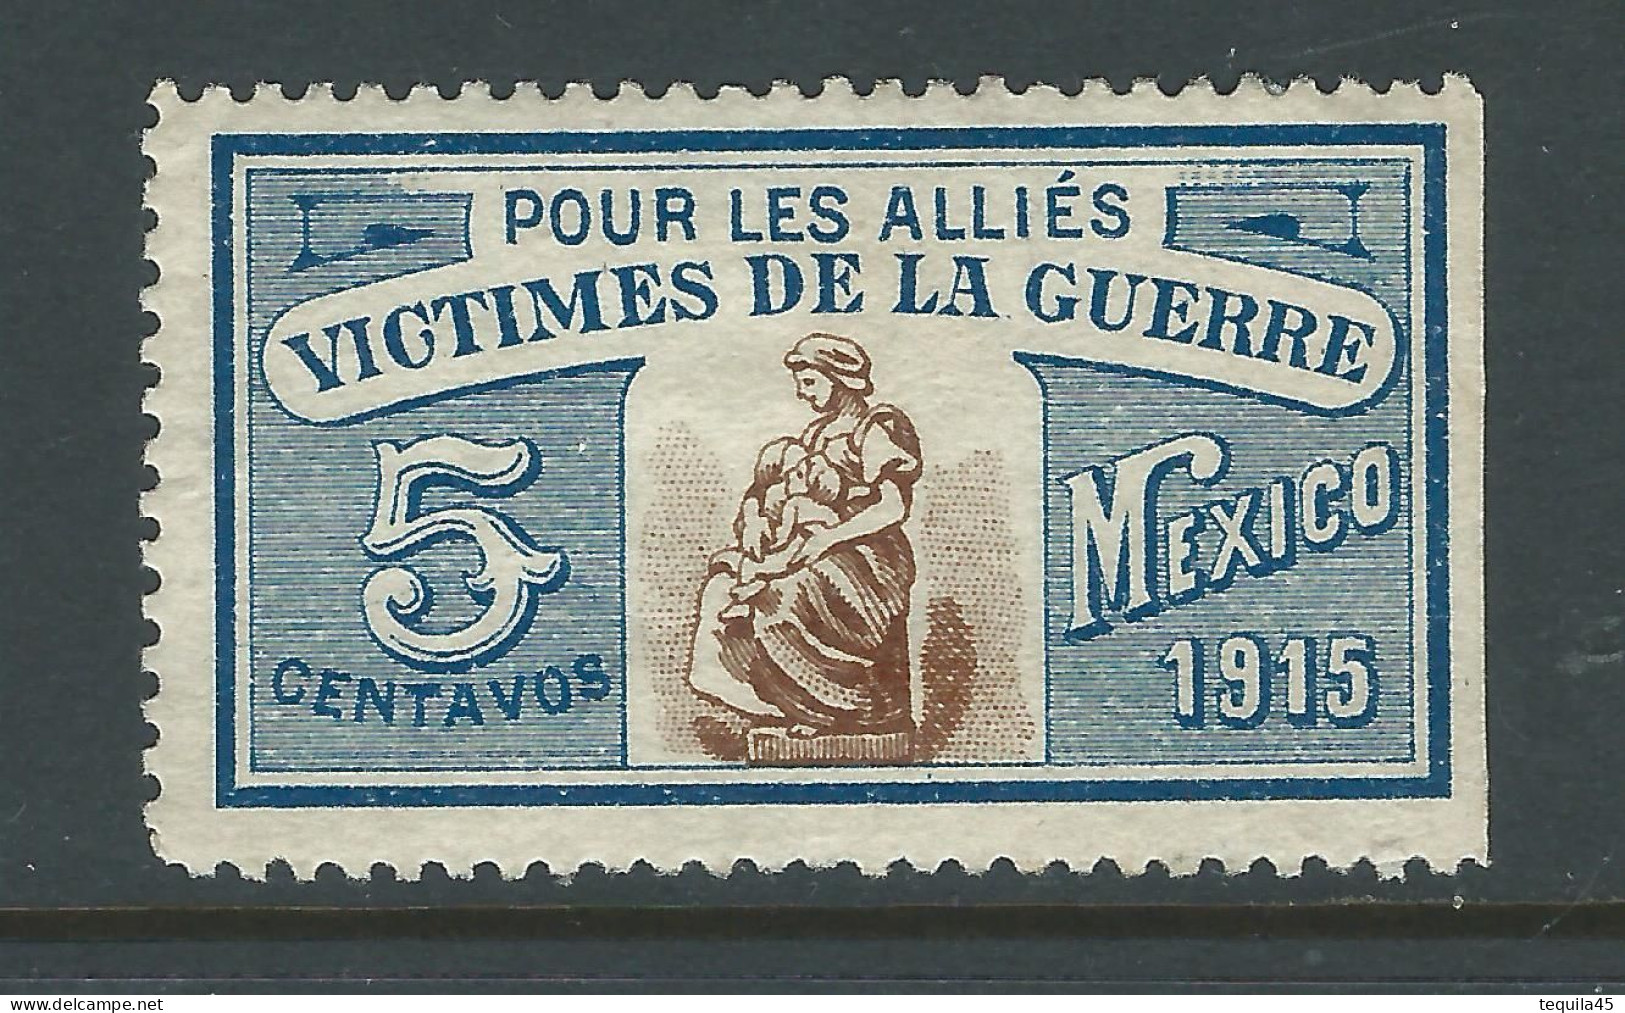 VIGNETTE CROIX-ROUGE Non DELANDRE FRANCE Comité De MEXICO 1915 WWI WW1 Cinderella Poster Stamp 1914 1918 War - Rotes Kreuz